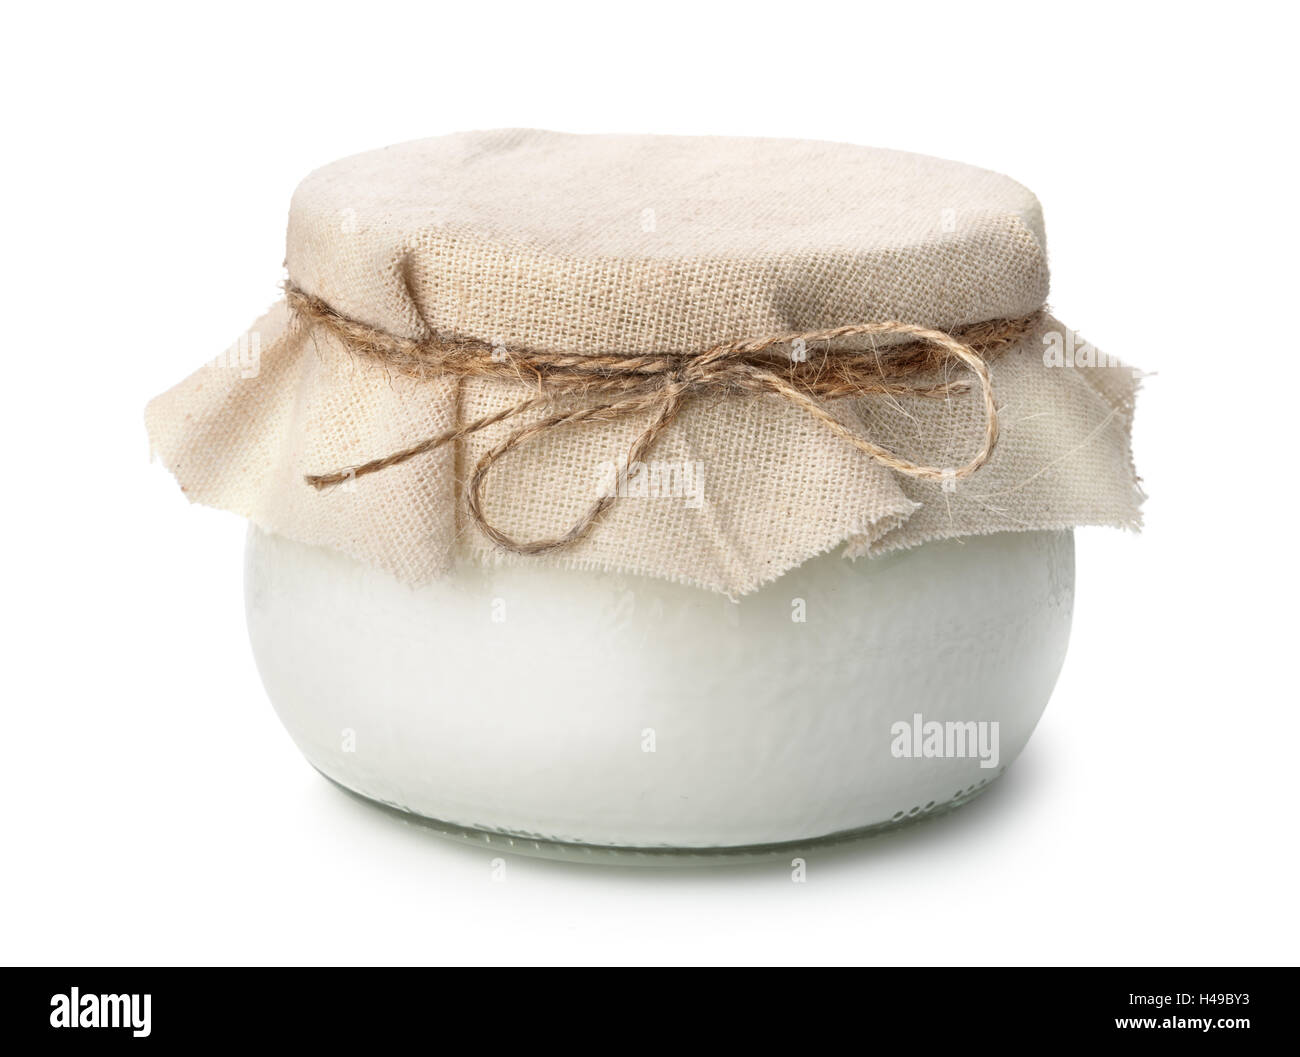 Pot of homemade organic yogurt isolated on white Stock Photo